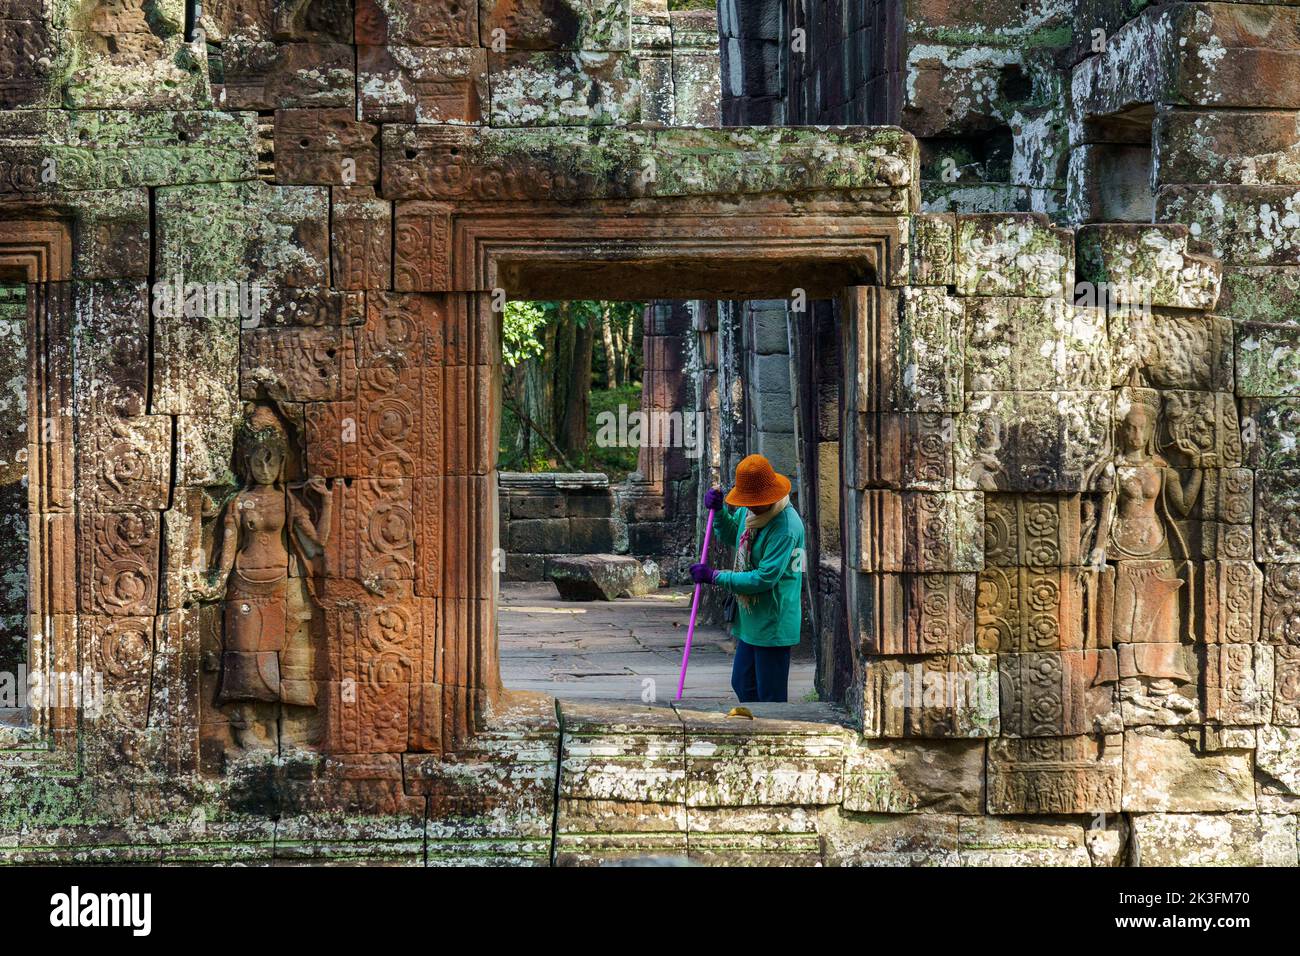 Camboya. Provincia de Siem Reap. El parque arqueológico de Angkor. Una mujer limpia las antiguas ruinas del templo Banteay Kdei Foto de stock